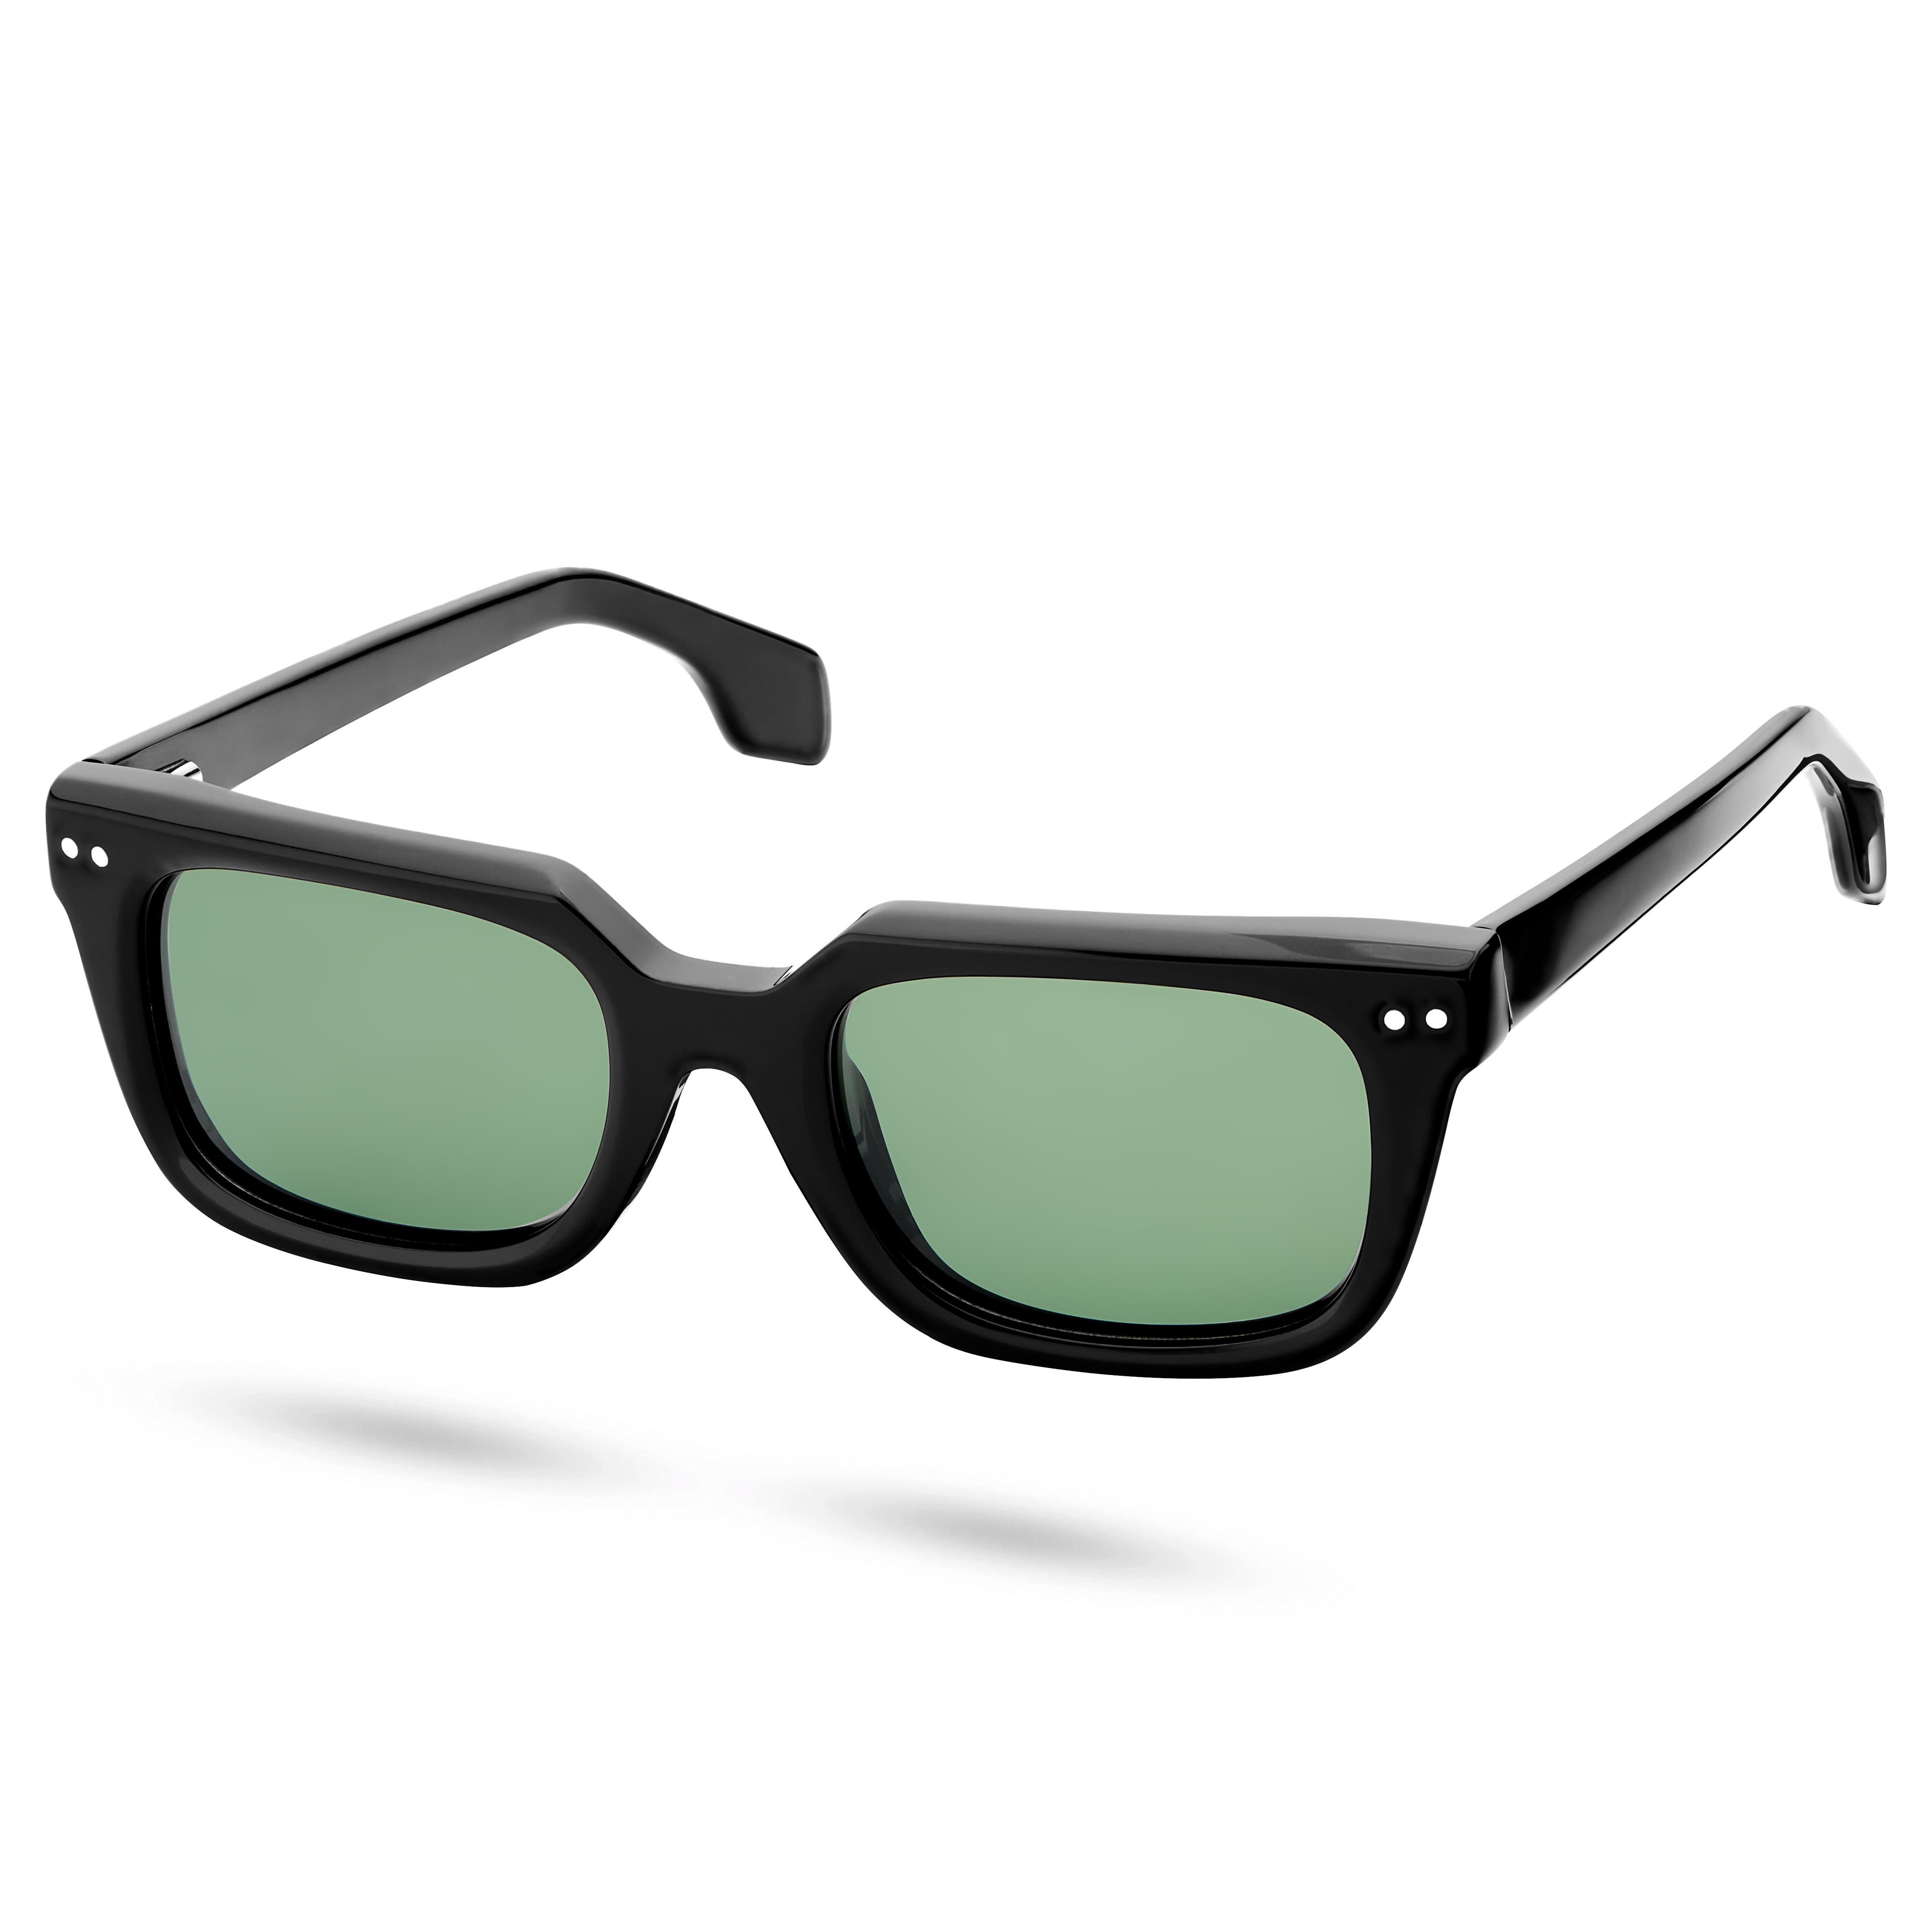 Black & Forest Green Polarised Horn Rimmed Sunglasses